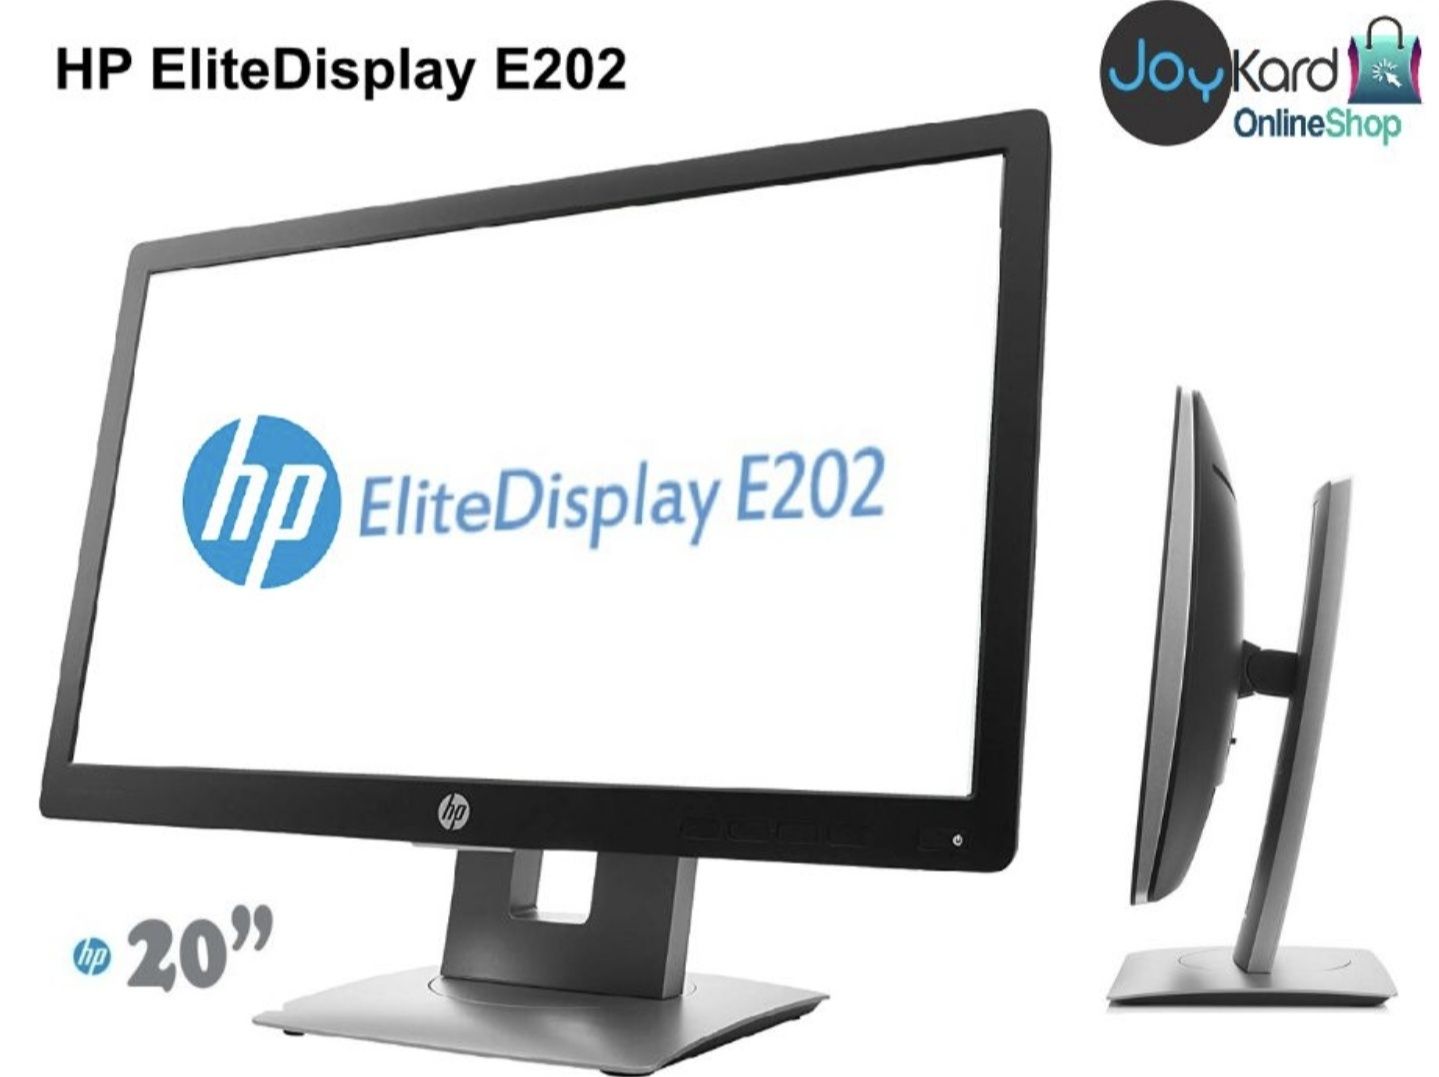 Monitor HP EliteDisplay E202 (Novo em caixa)